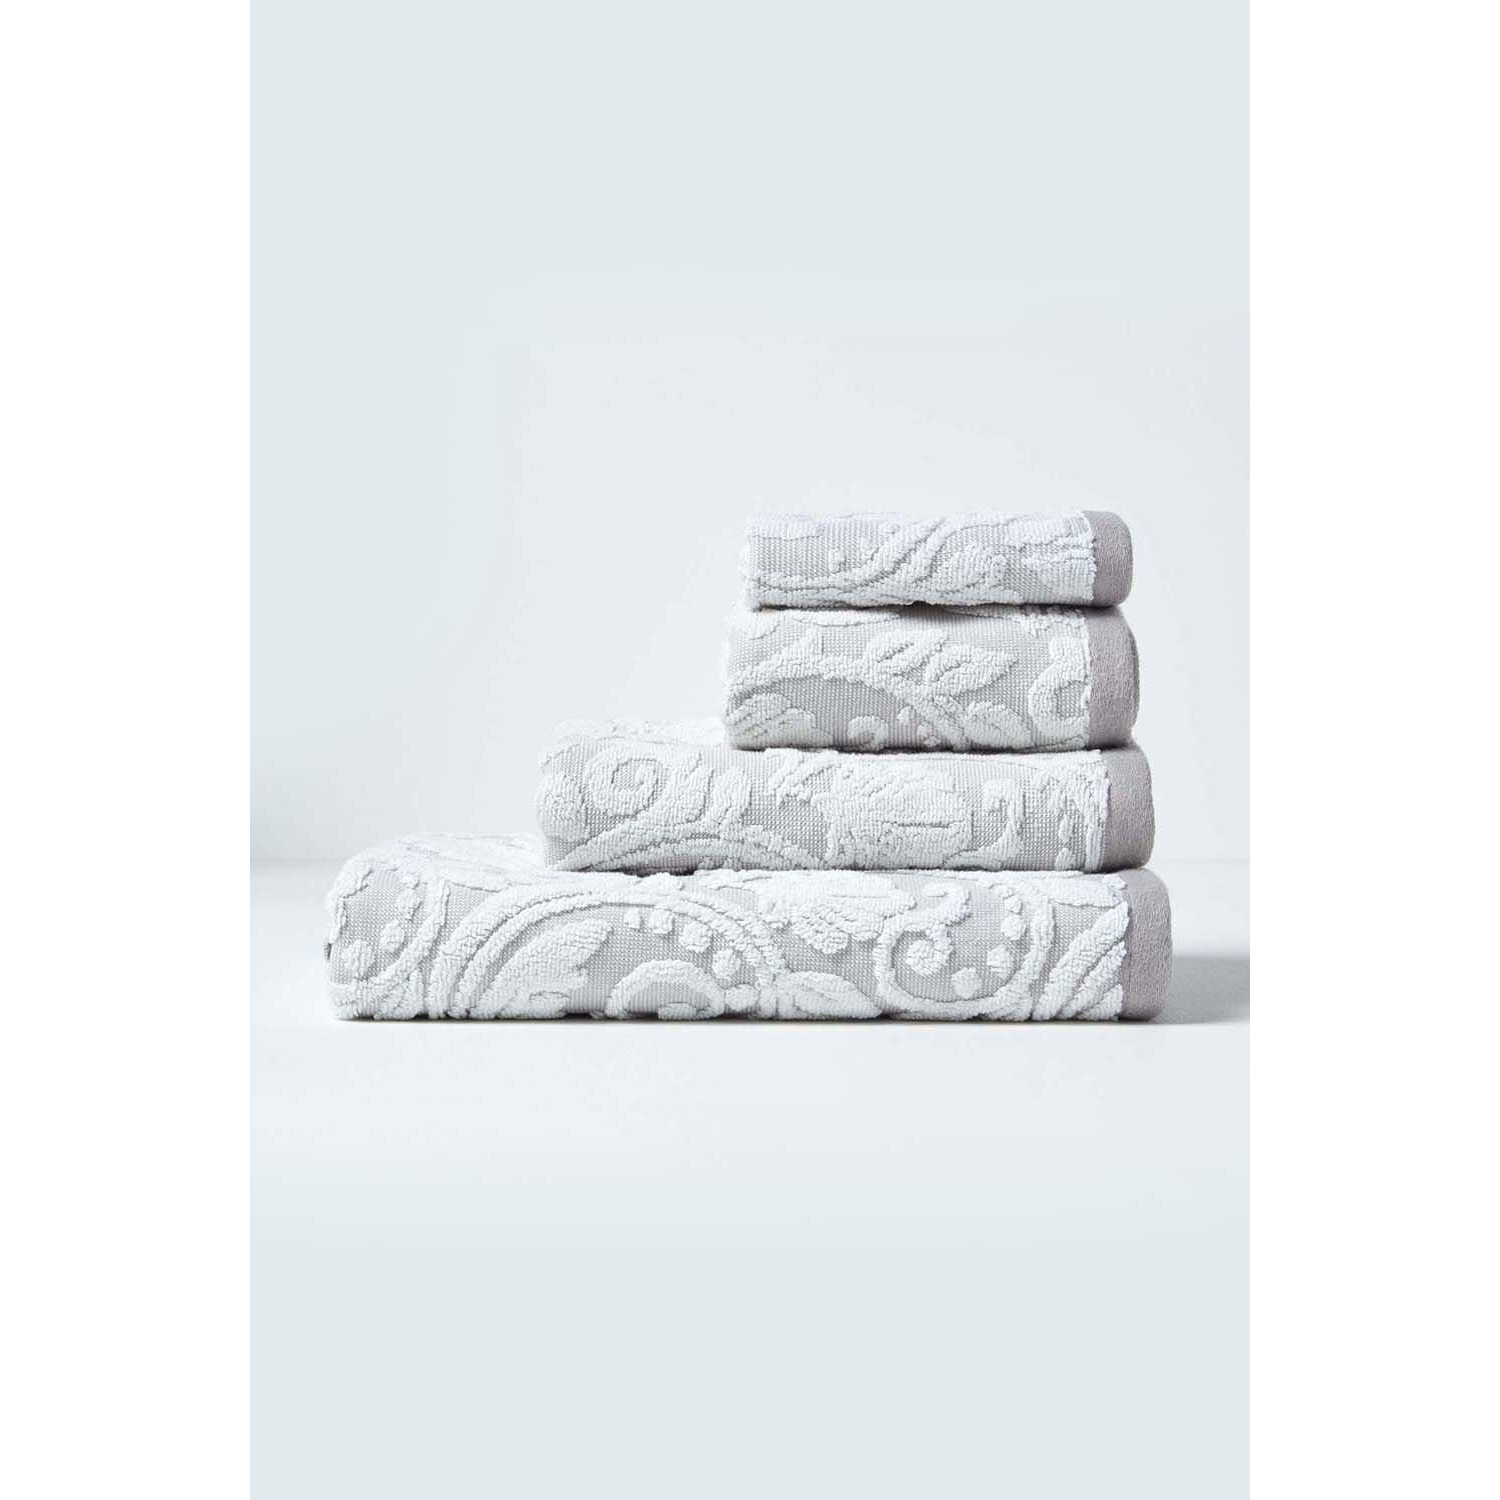 Damask 100% Turkish Cotton 600 GSM Towel - image 1